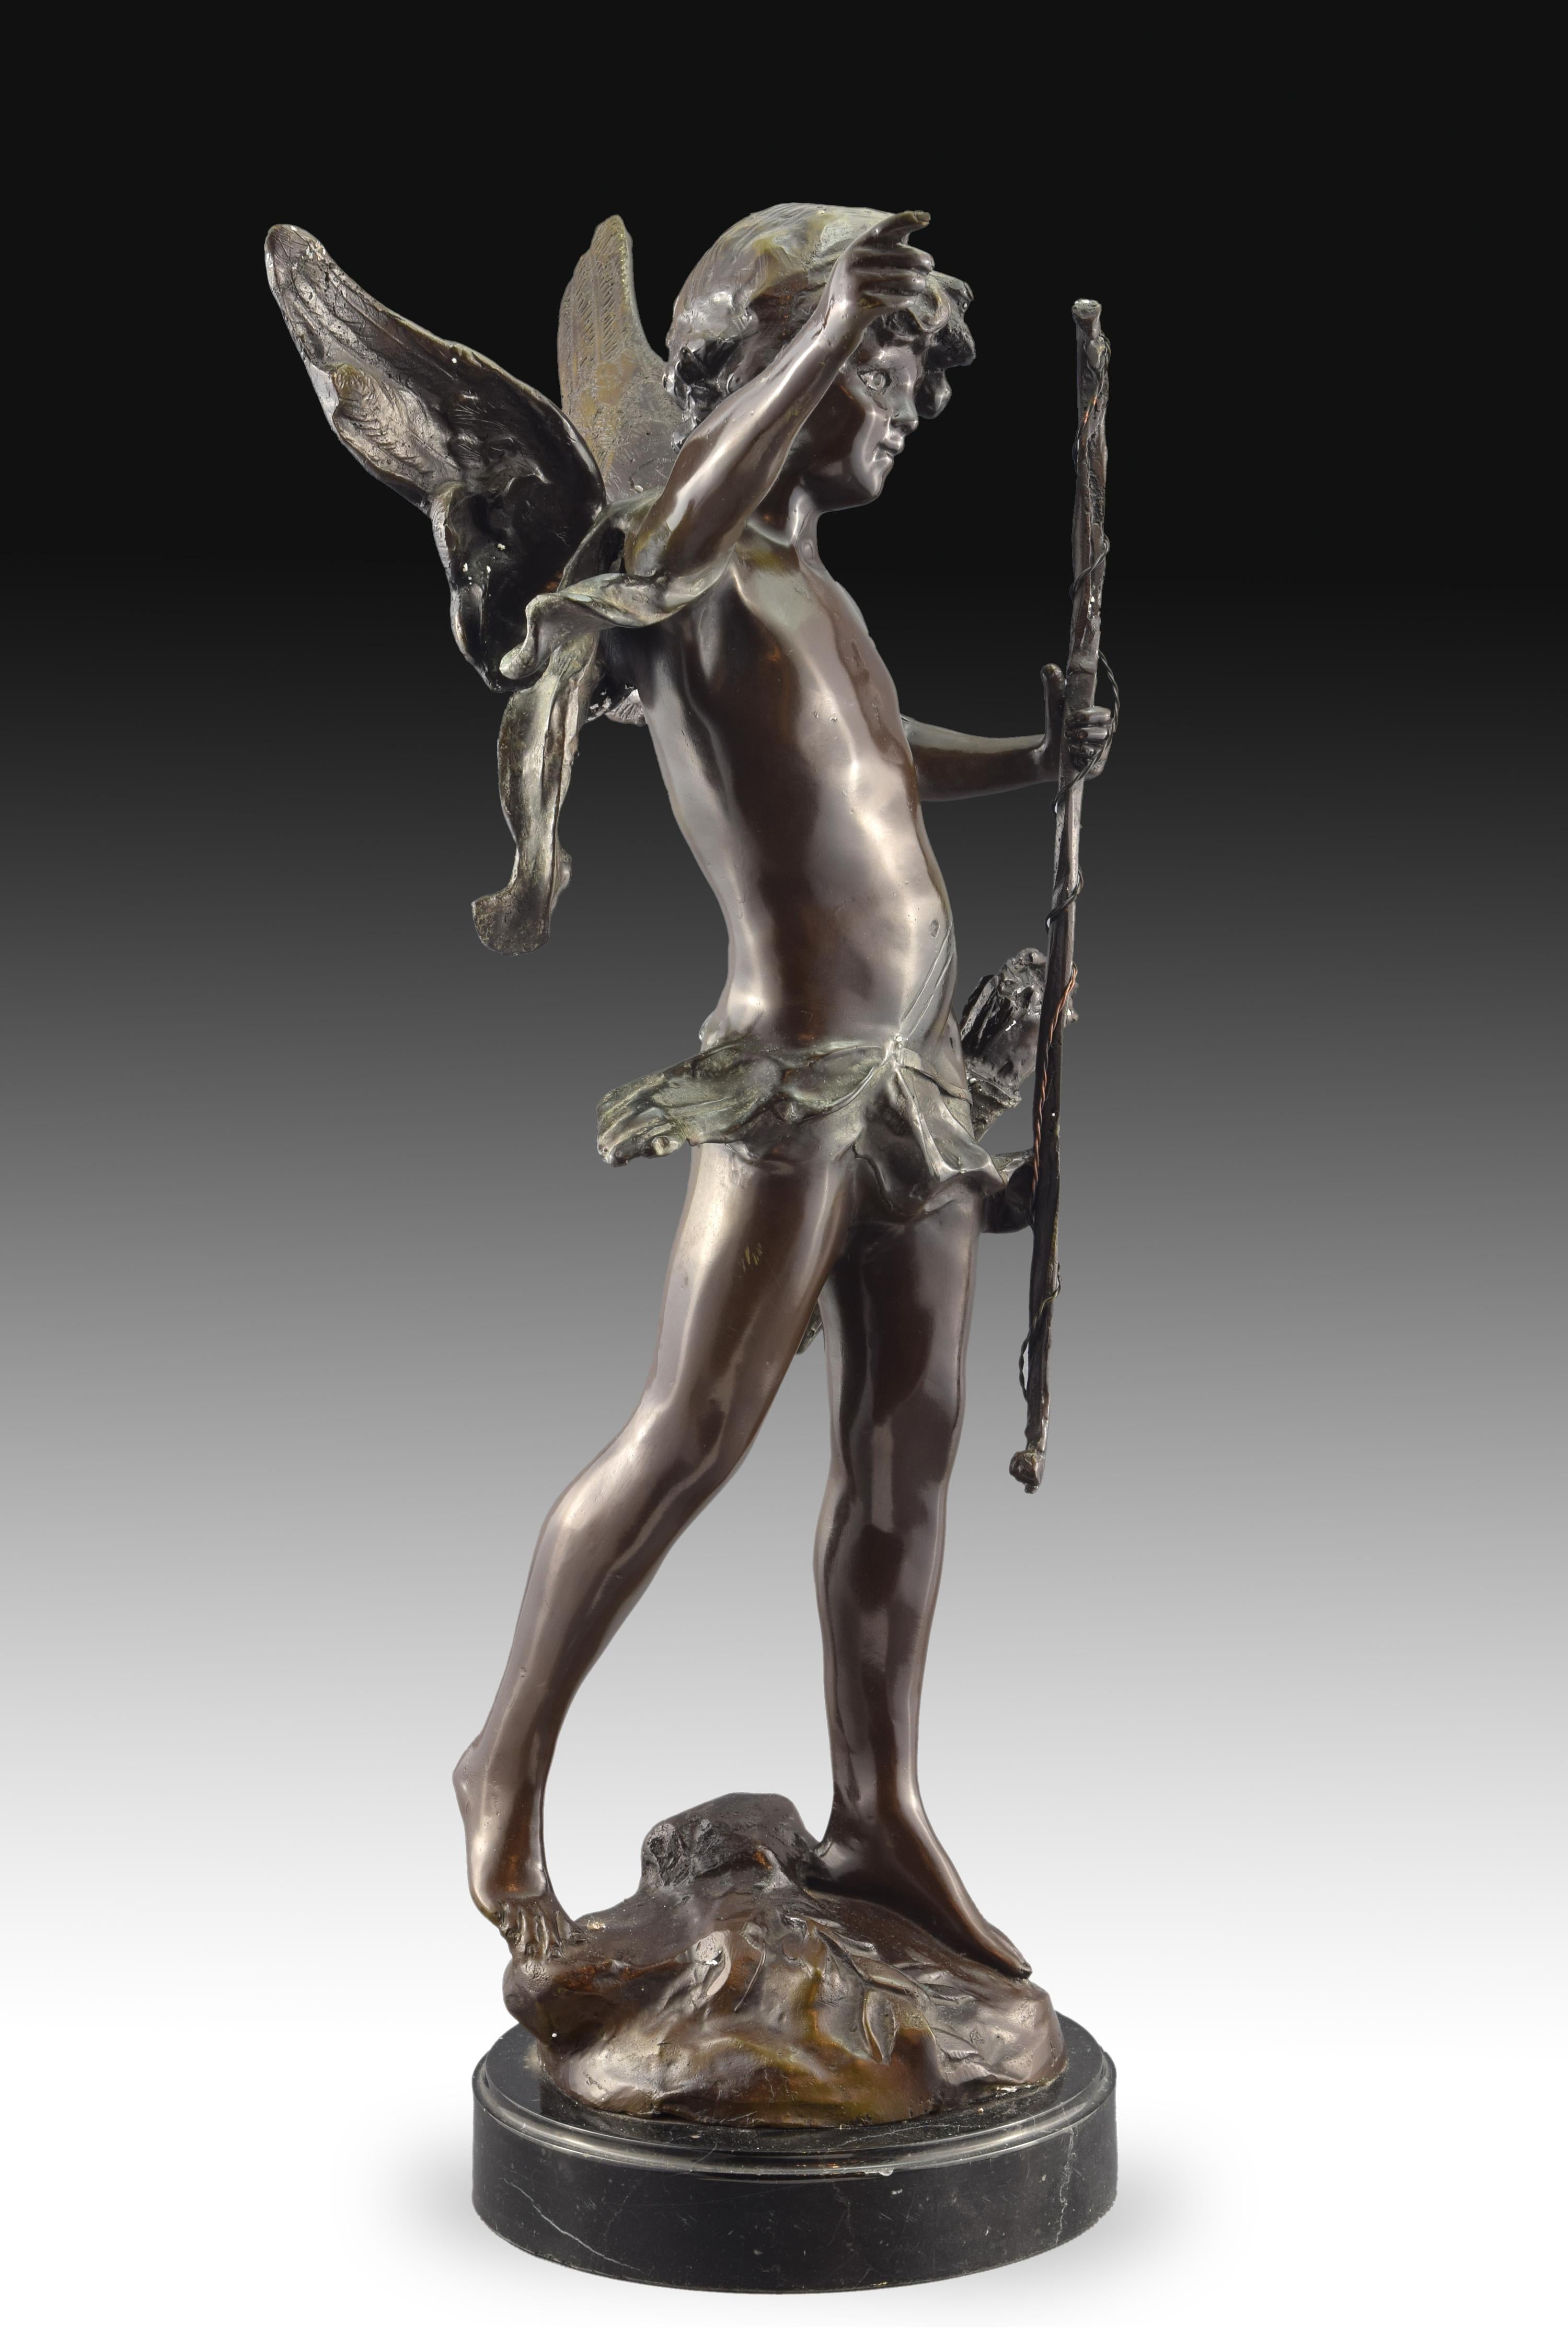 Sur une base ronde se dresse la figure du dieu de l'amour, Cupidon. La sculpture en bronze, avec les attributs iconographiques correspondant à cette figure de la mythologie classique, a été réalisée d'après les modèles d'August Moreau (1834-1917).